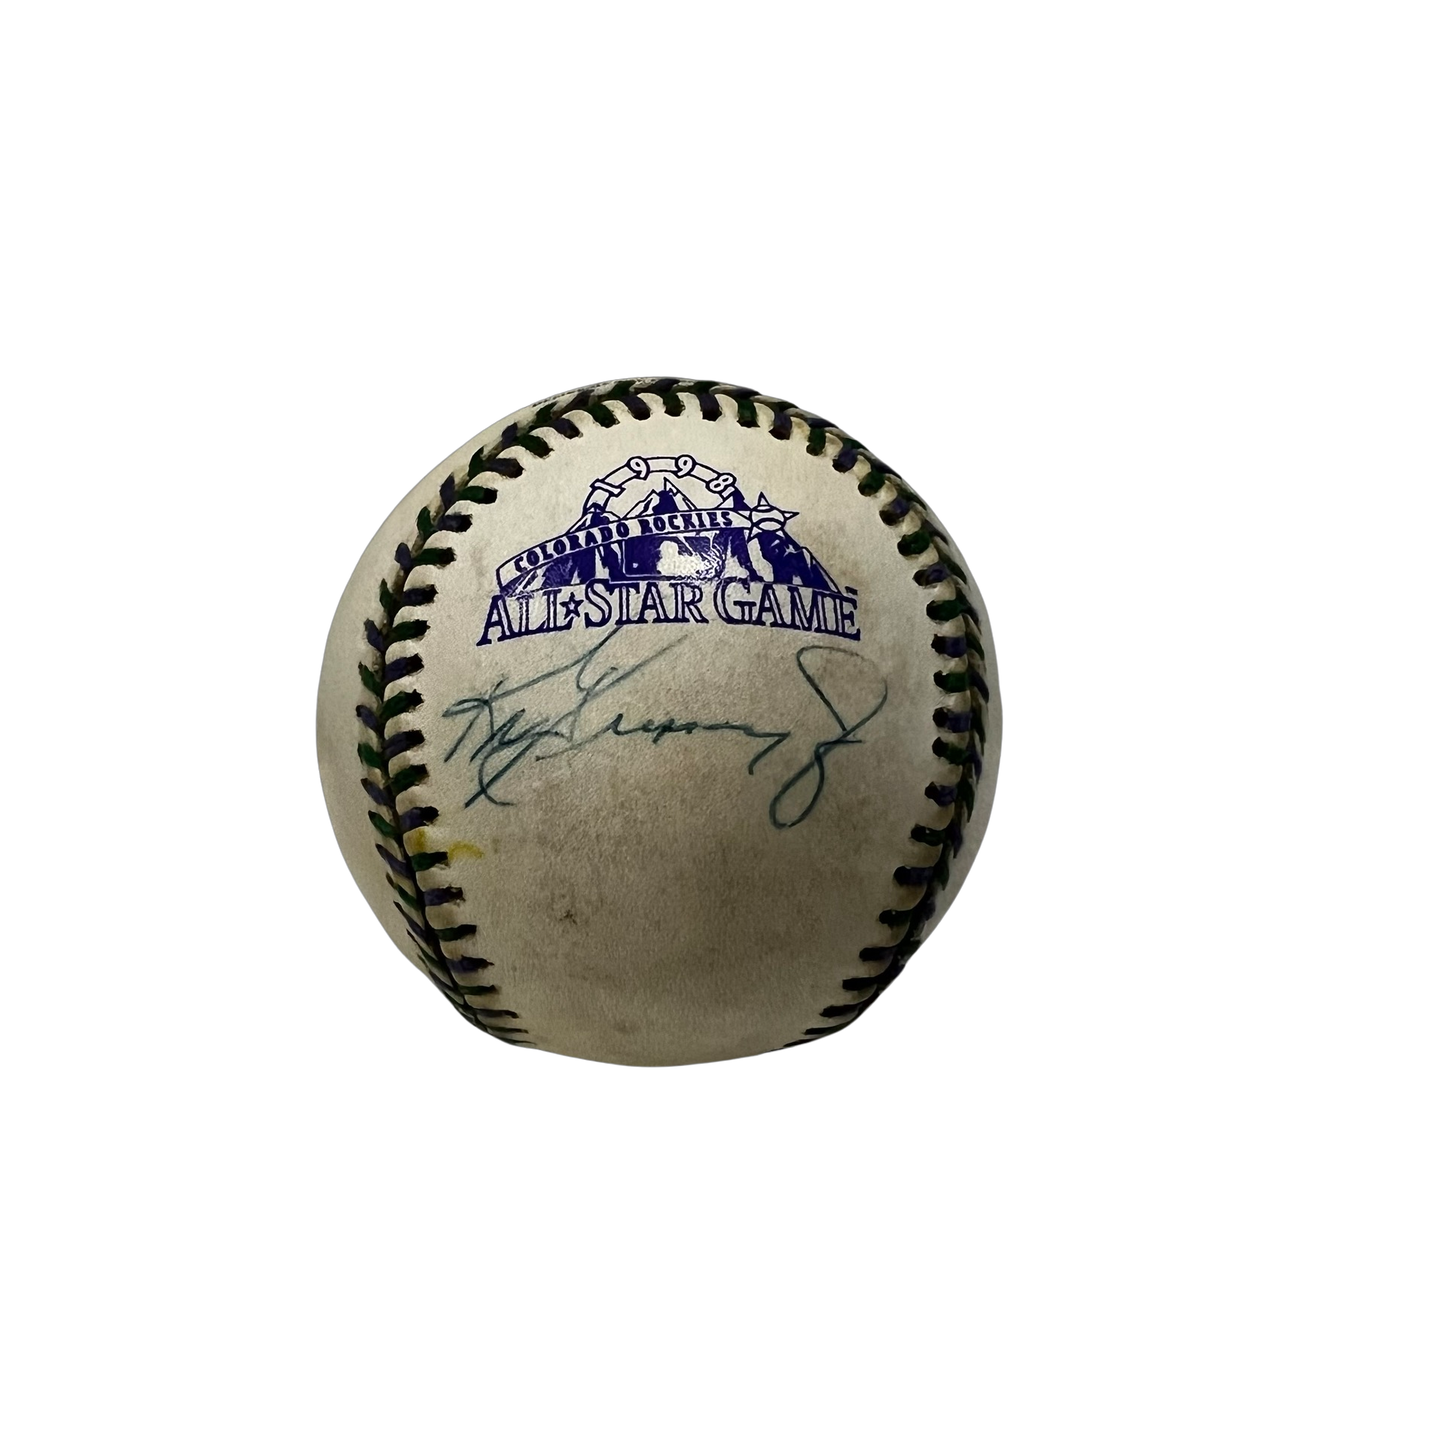 Ken Griffey Jr. Autographed 1998 All Star Game Logo Ball Beckett